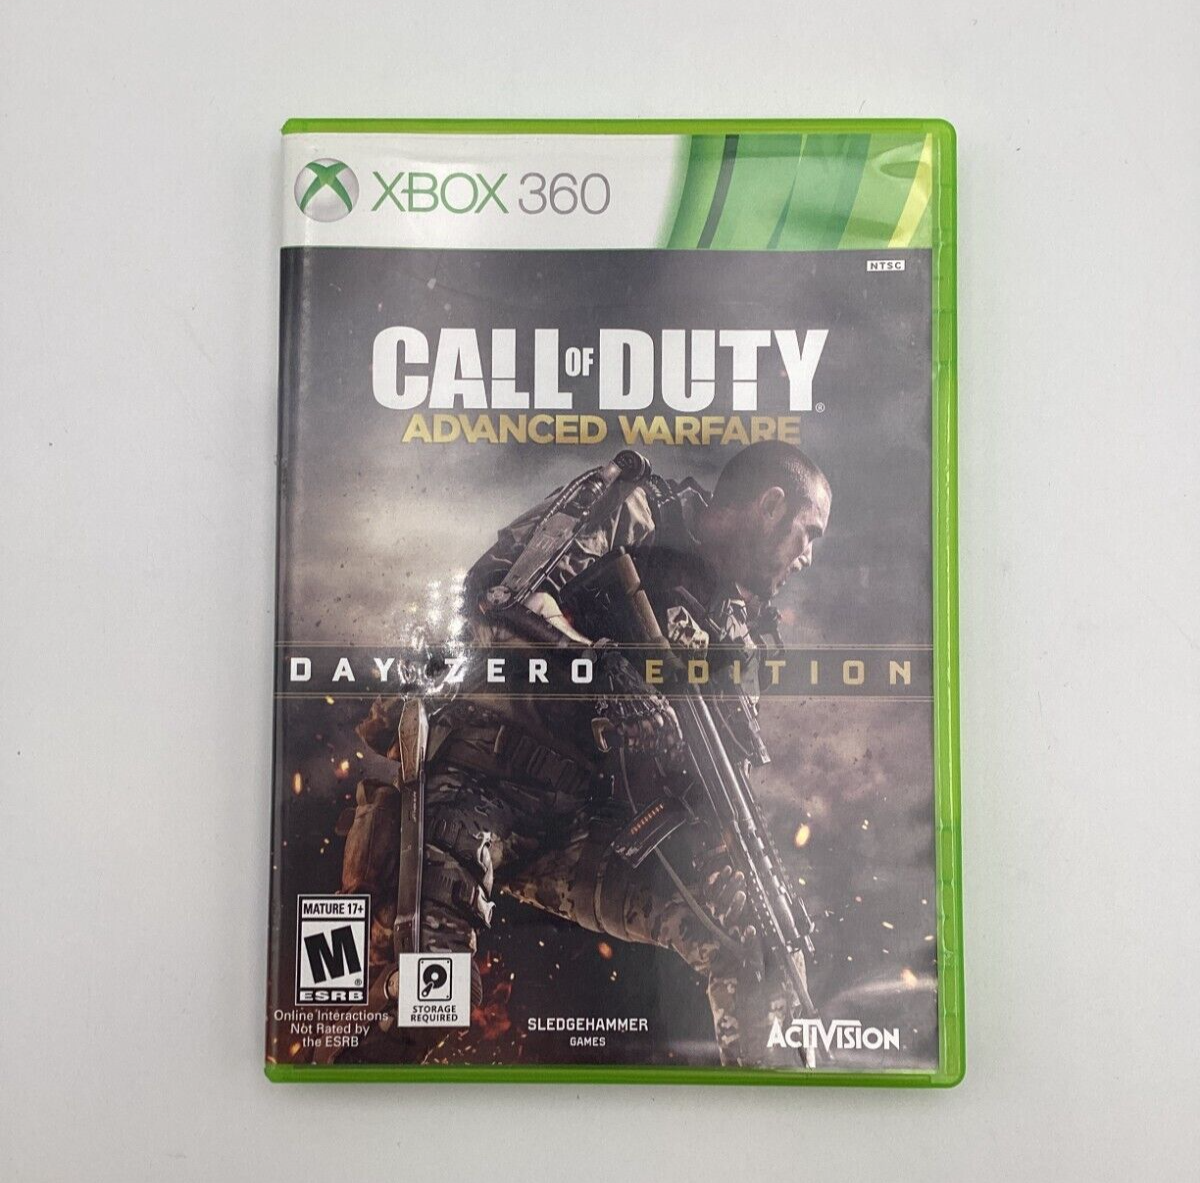 Call of Duty (COD) Advanced Warfare Day Zero Edition (PS3 Game